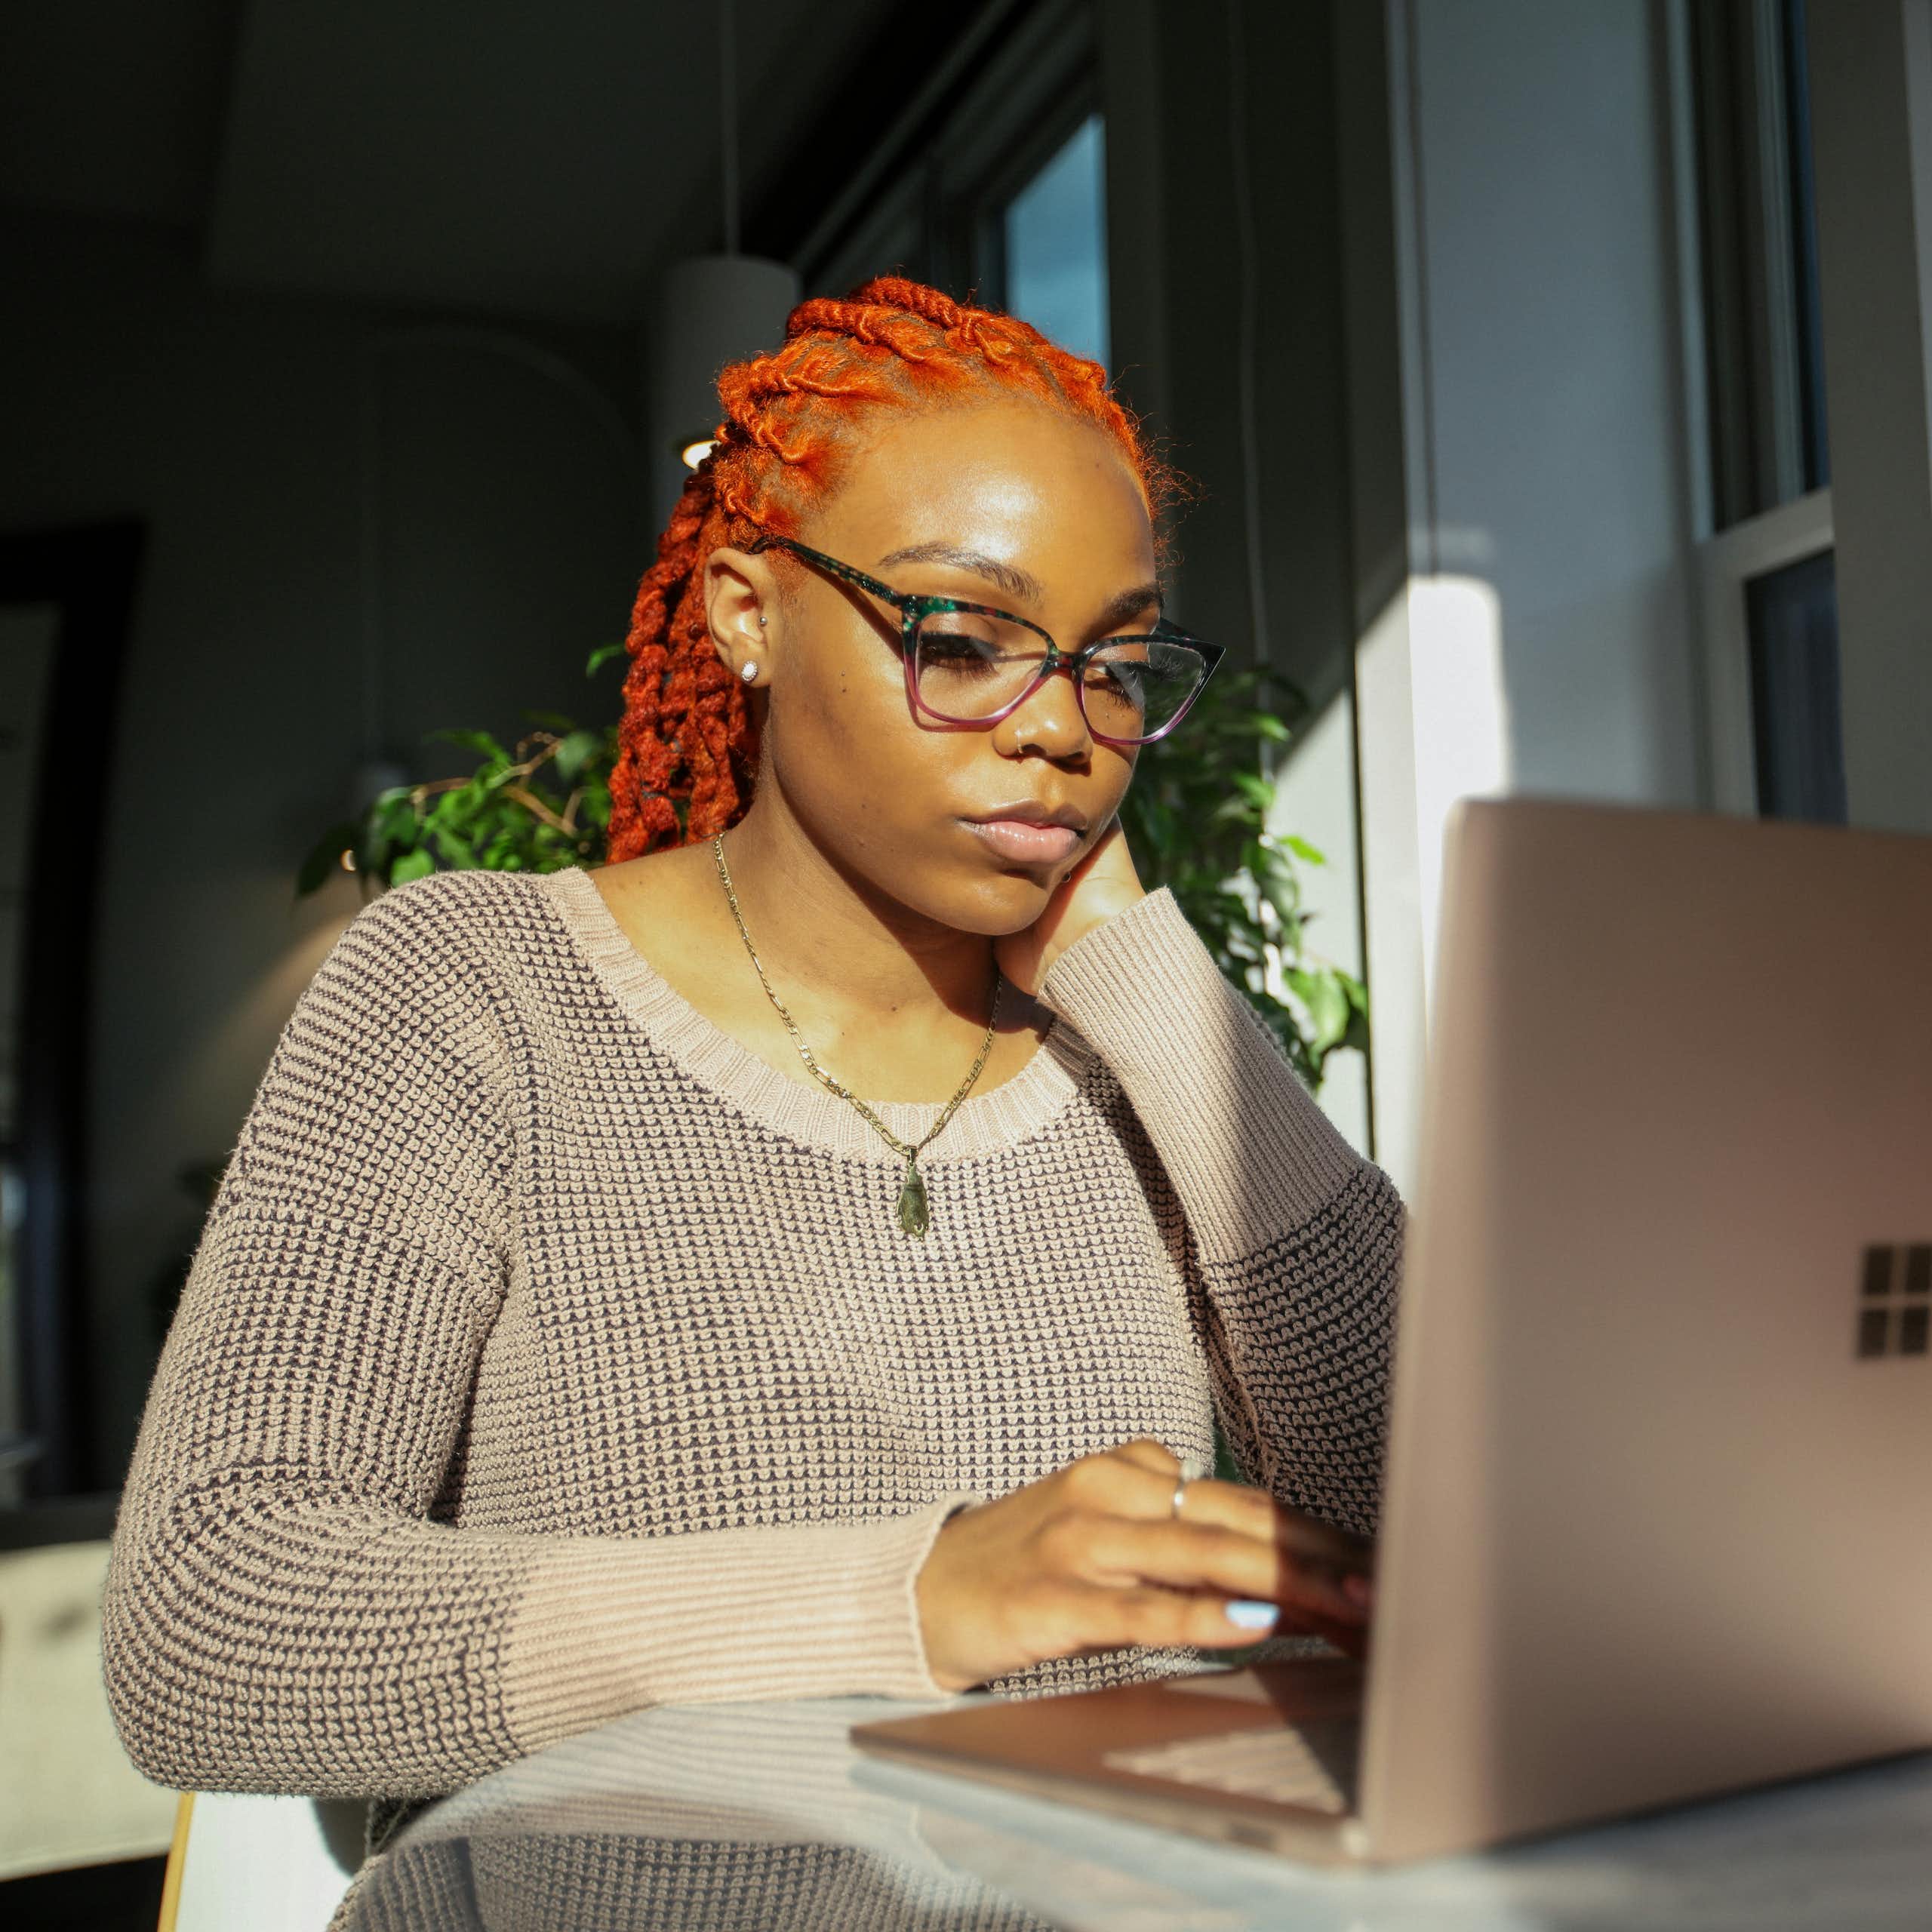 African-Australian woman types on laptop